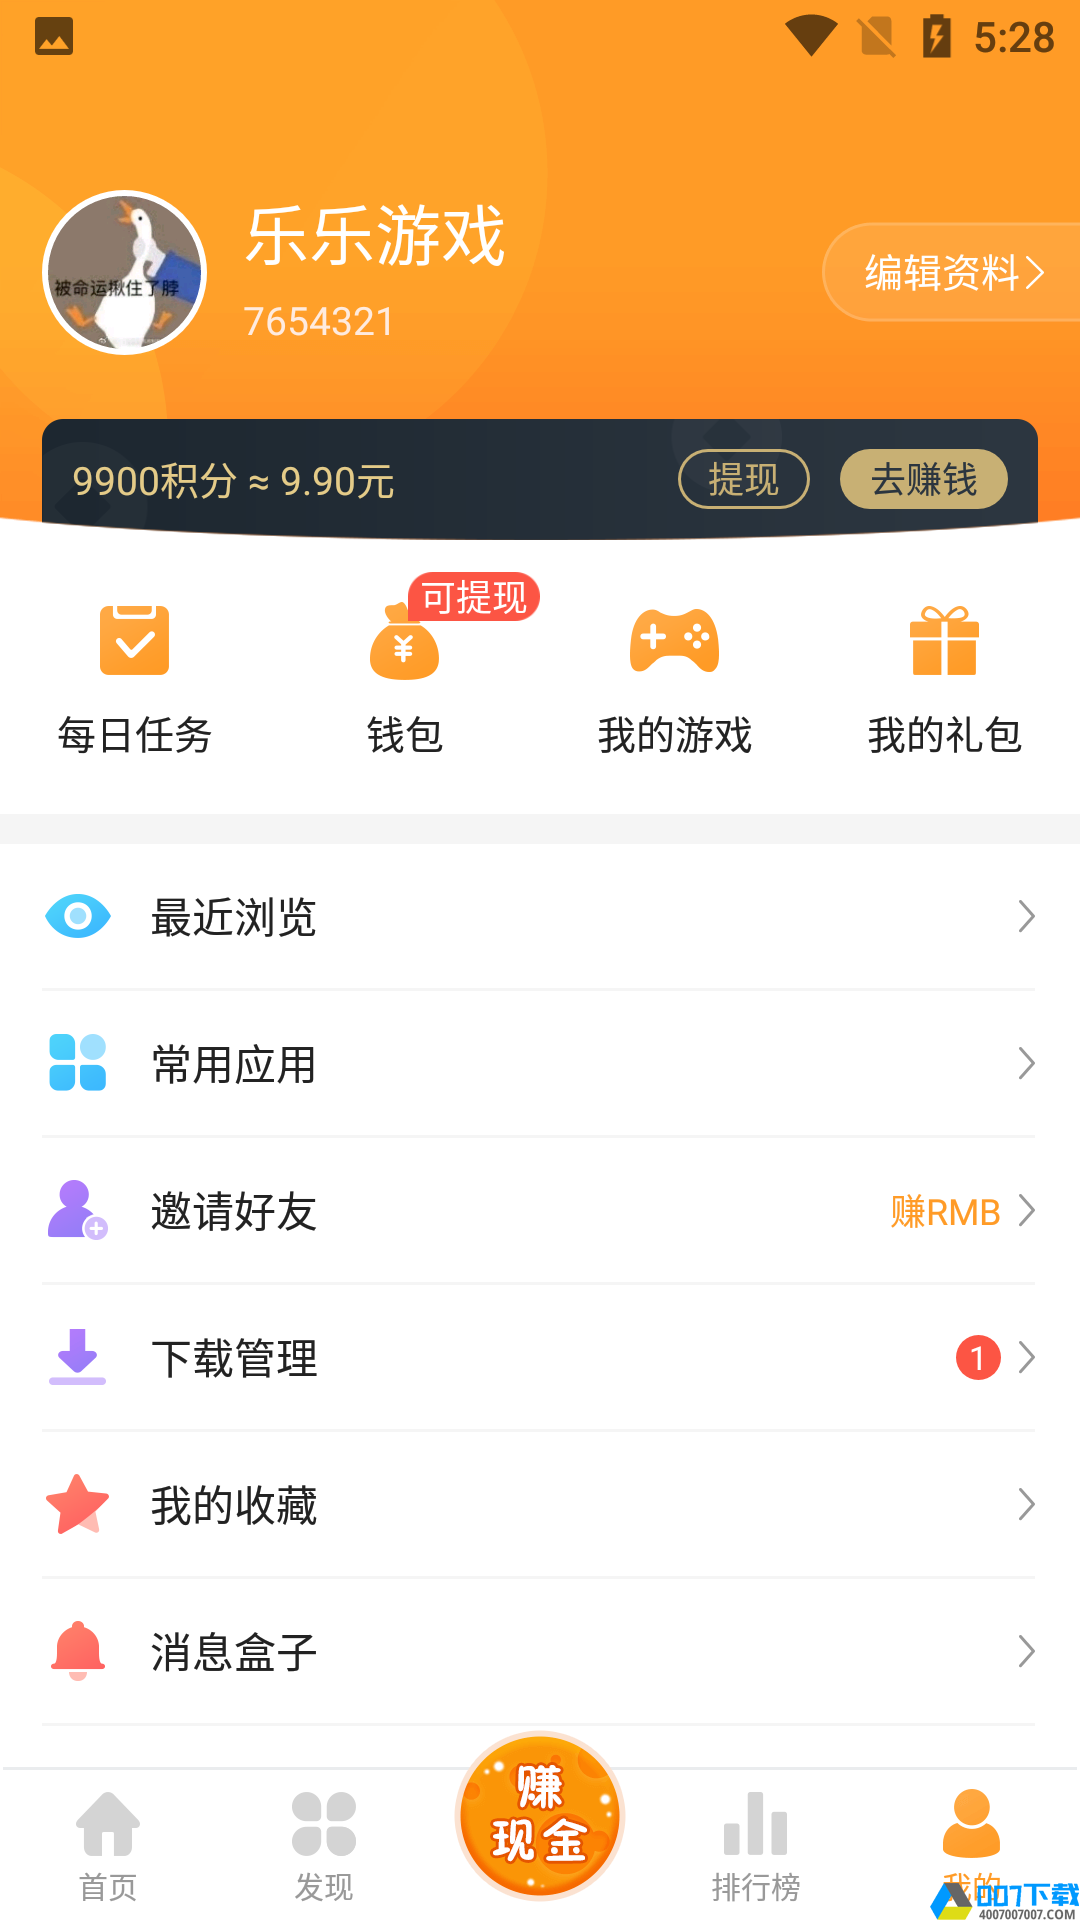 乐乐游戏盒安卓版app下载_乐乐游戏盒安卓版app最新版免费下载